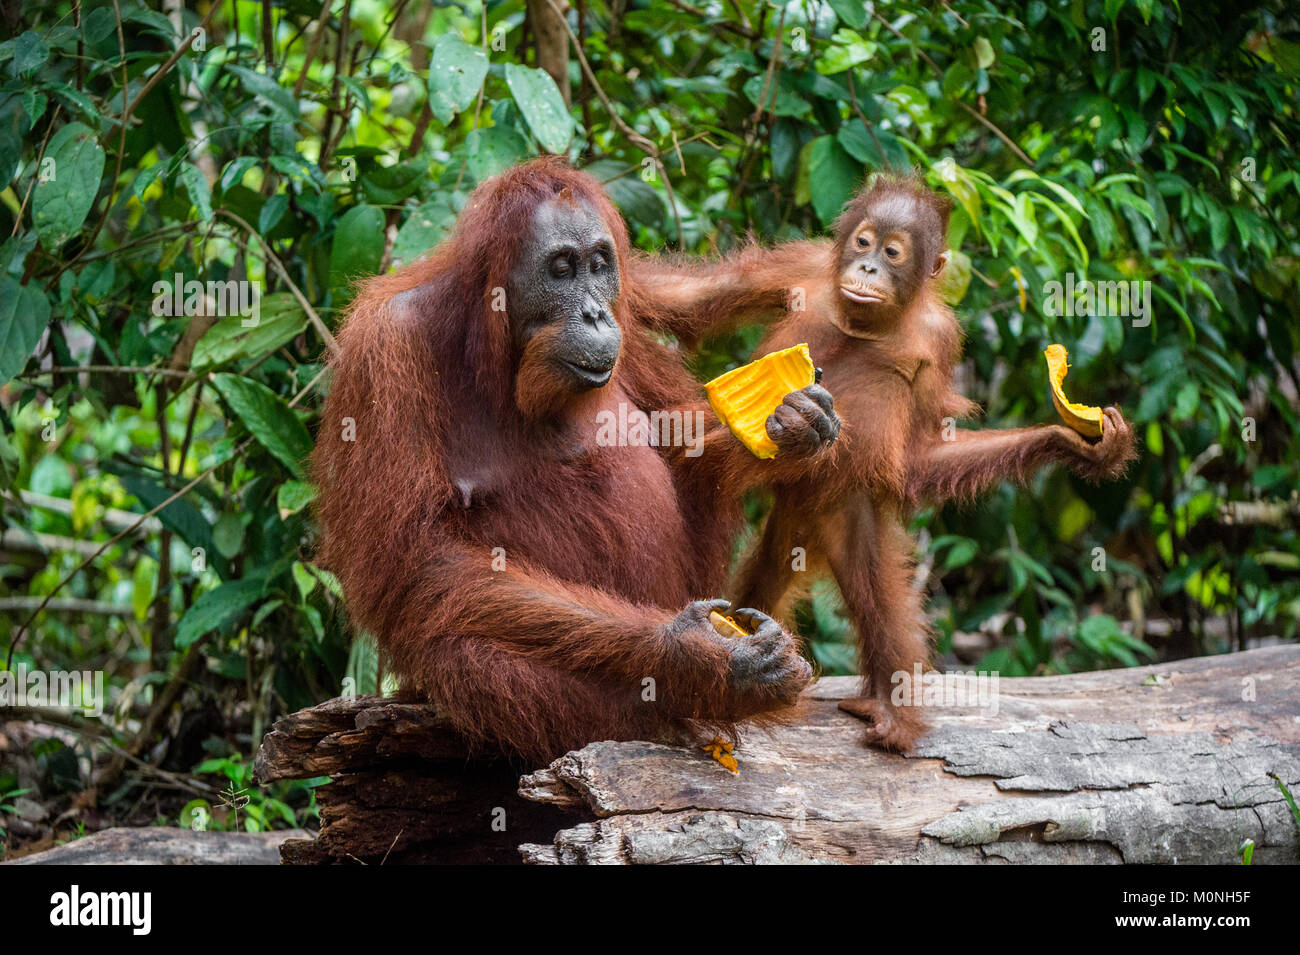 Mère et de l'orang-outan cub. Orang-outan (Pongo pygmaeus) wurmbii dans la nature sauvage. Les forêts tropicales de l'île de Bornéo. L'Indonésie. Banque D'Images